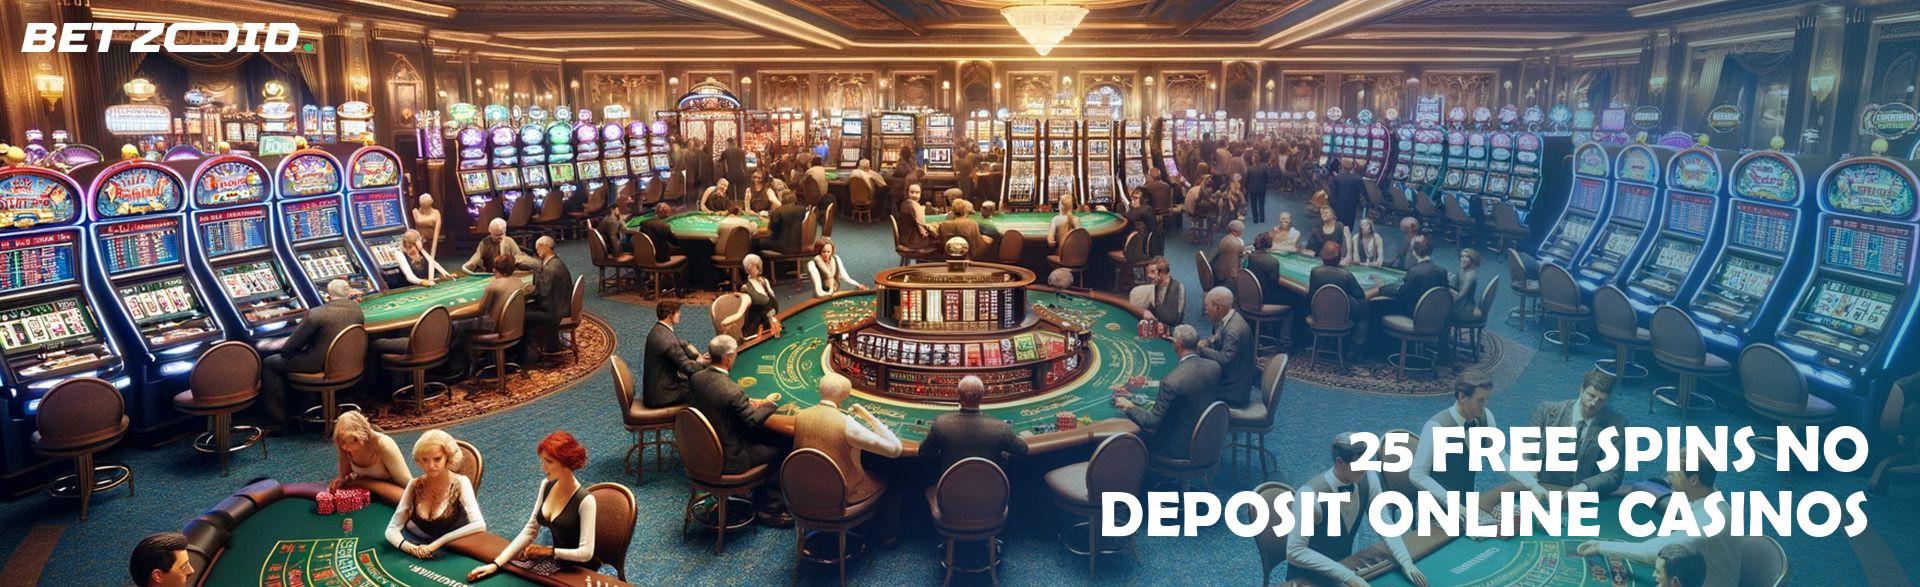 25 Free Spins No Deposit Online Casinos.